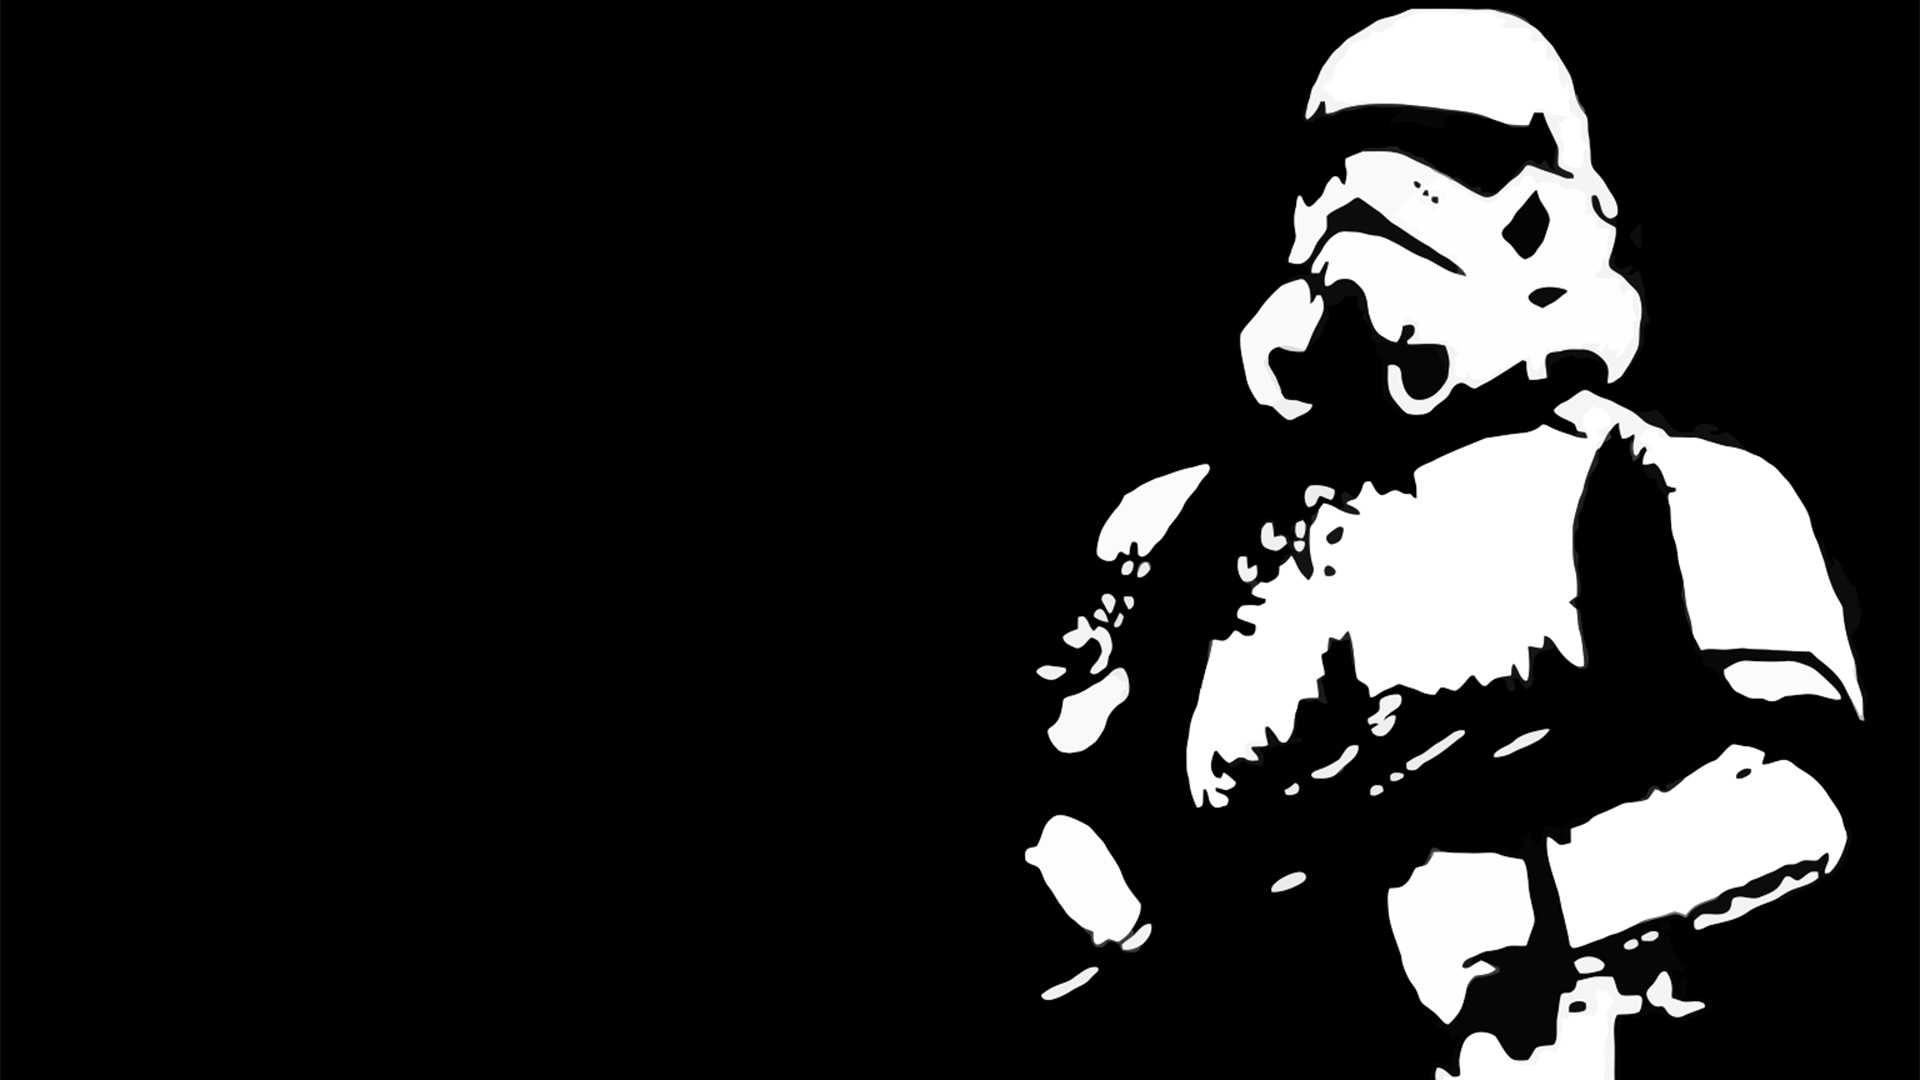 Star Wars Wallpaper Stormtroopers Contrast